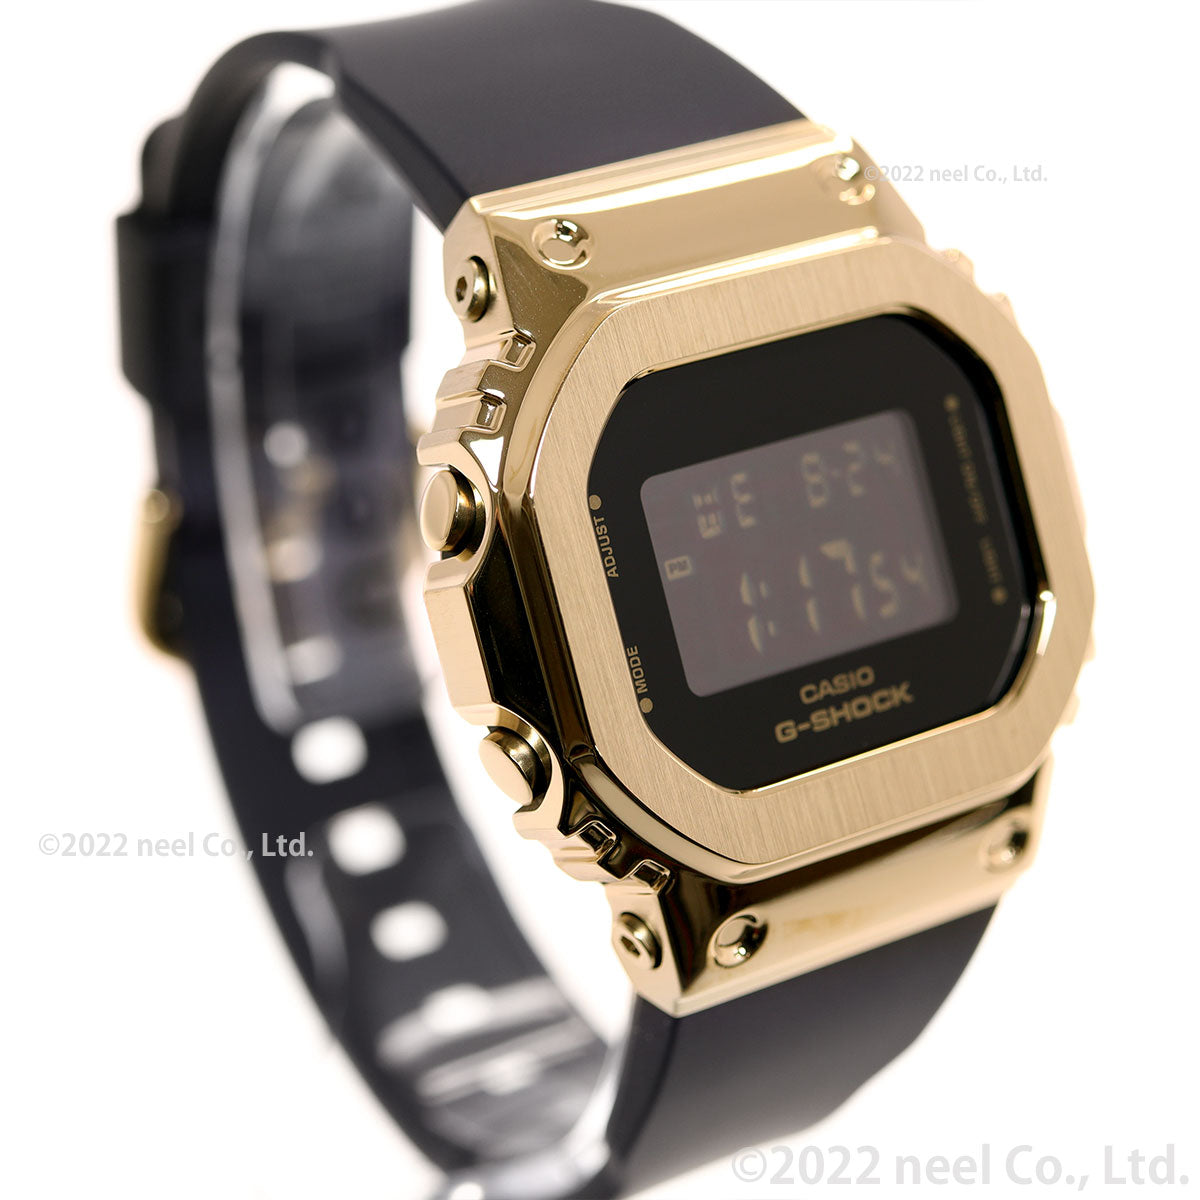 G-SHOCK カシオ Gショック CASIO デジタル 腕時計 メンズ レディース